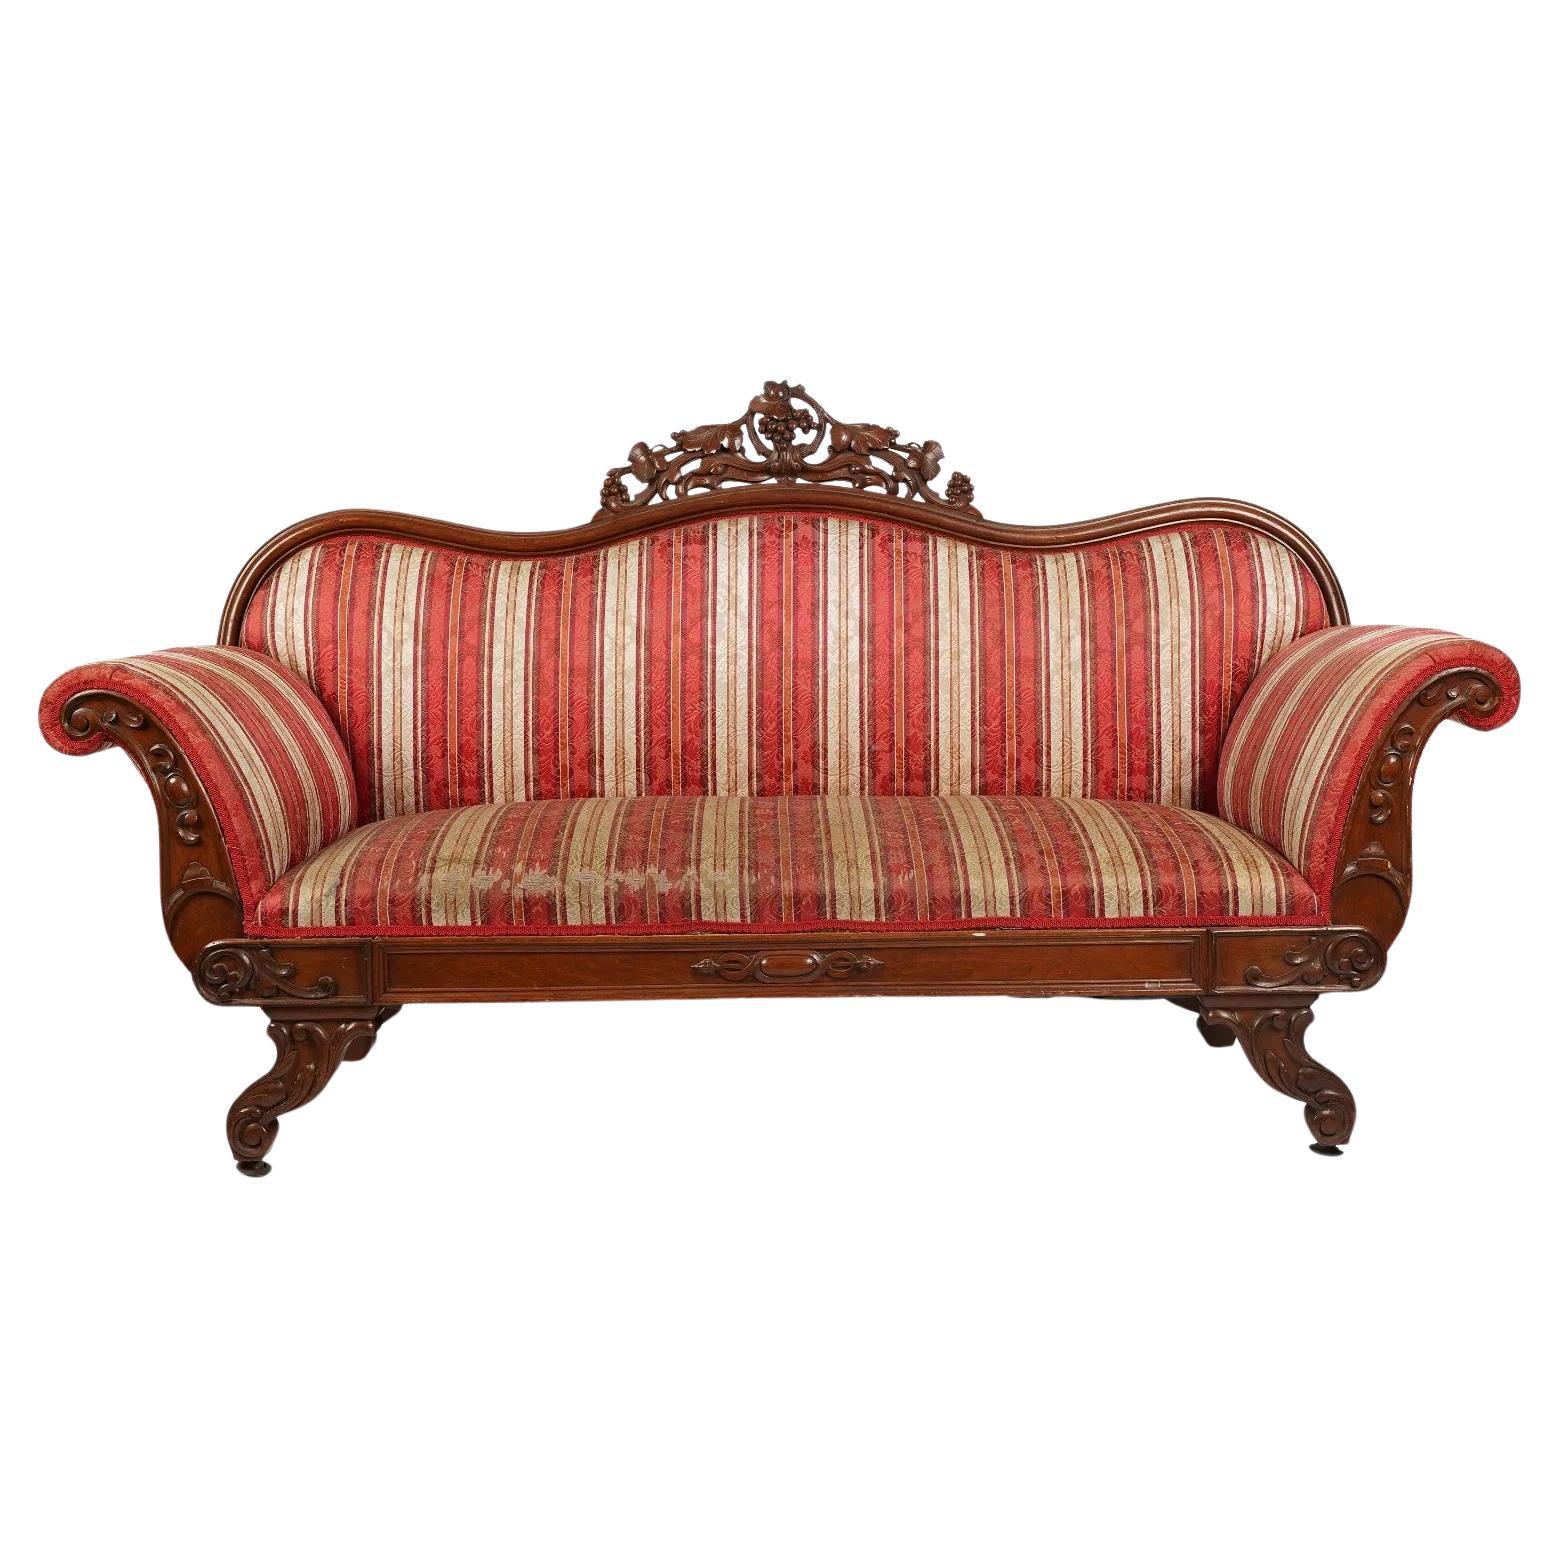 Period Antique American Victorian Rococo Revival Carved Walnut Sofa Circa 1850 For Sale